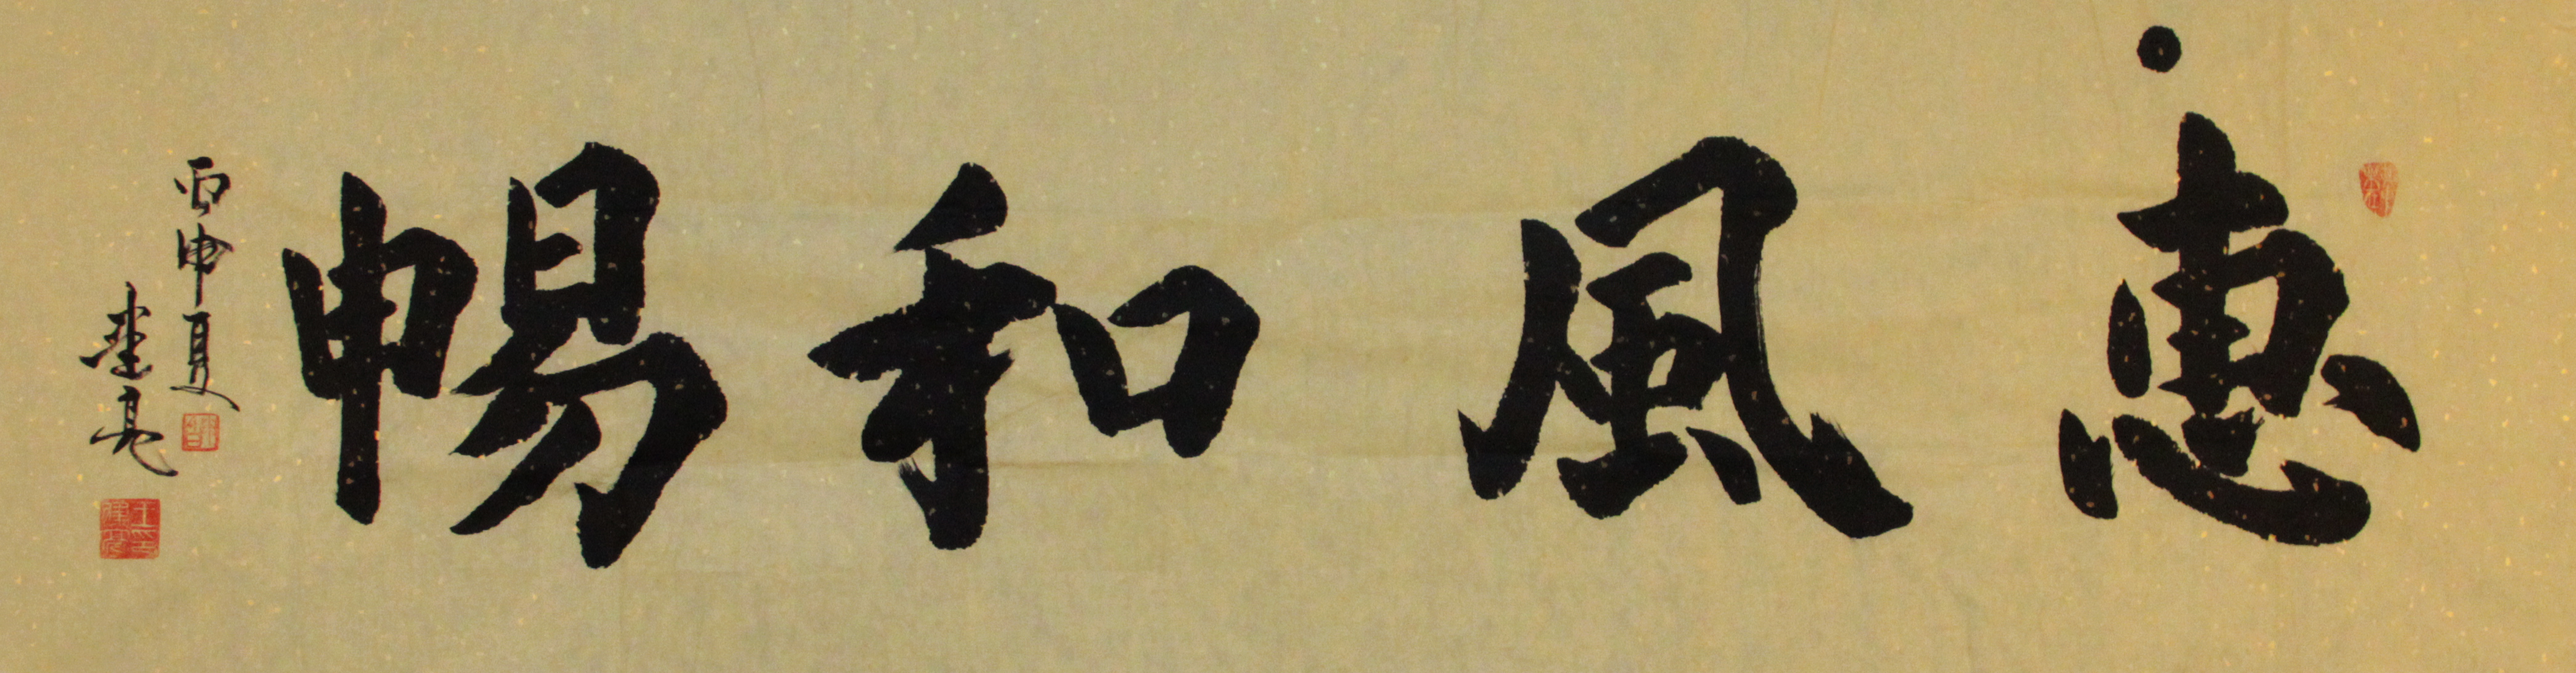 艺术先锋汉字的书法美怎么欣赏